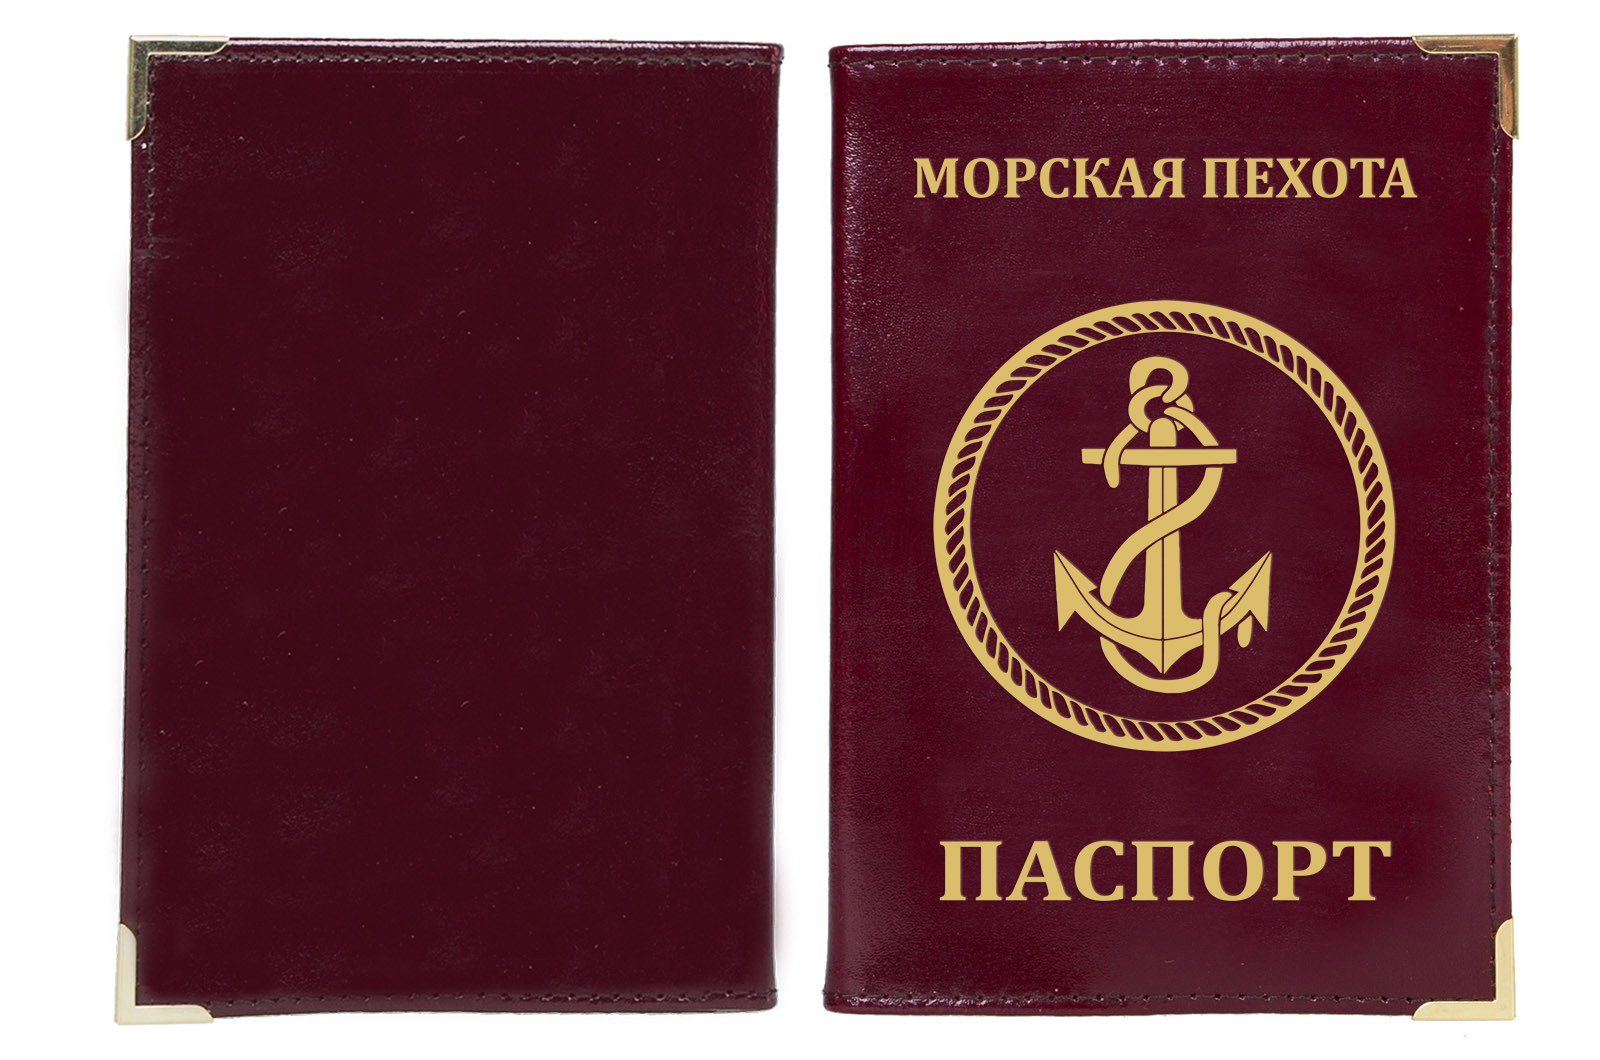  Недорого купить обложку на паспорт с эмблемой Морской пехоты